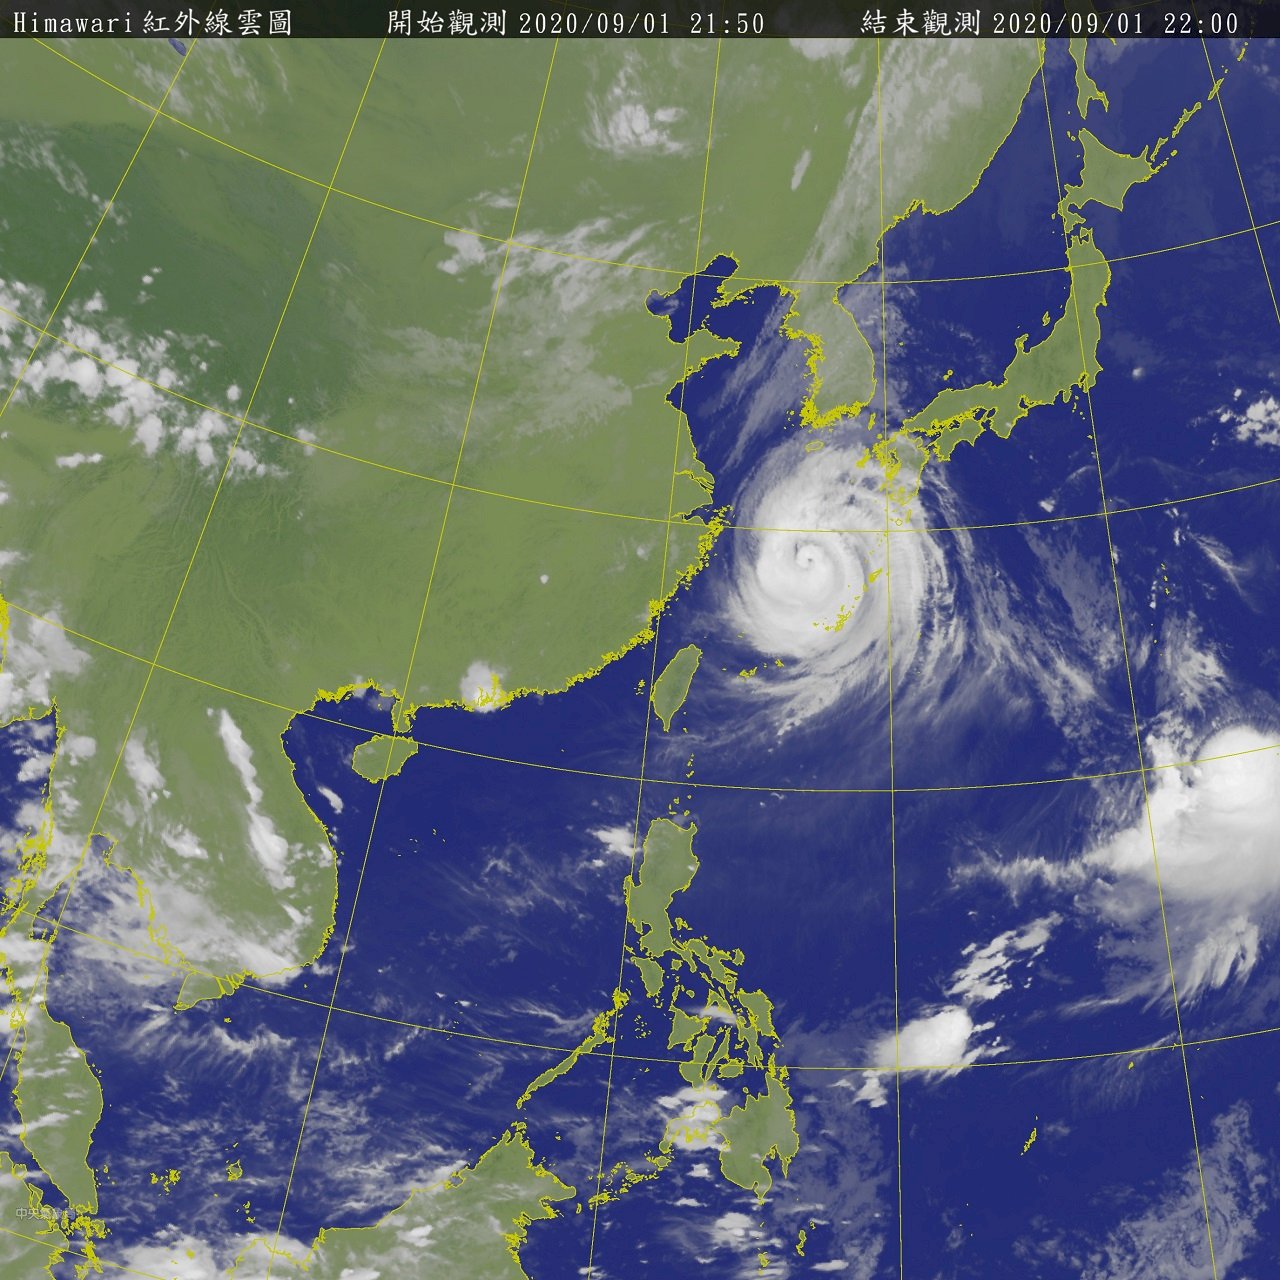 颱風海神生成 5至6日最接近台灣